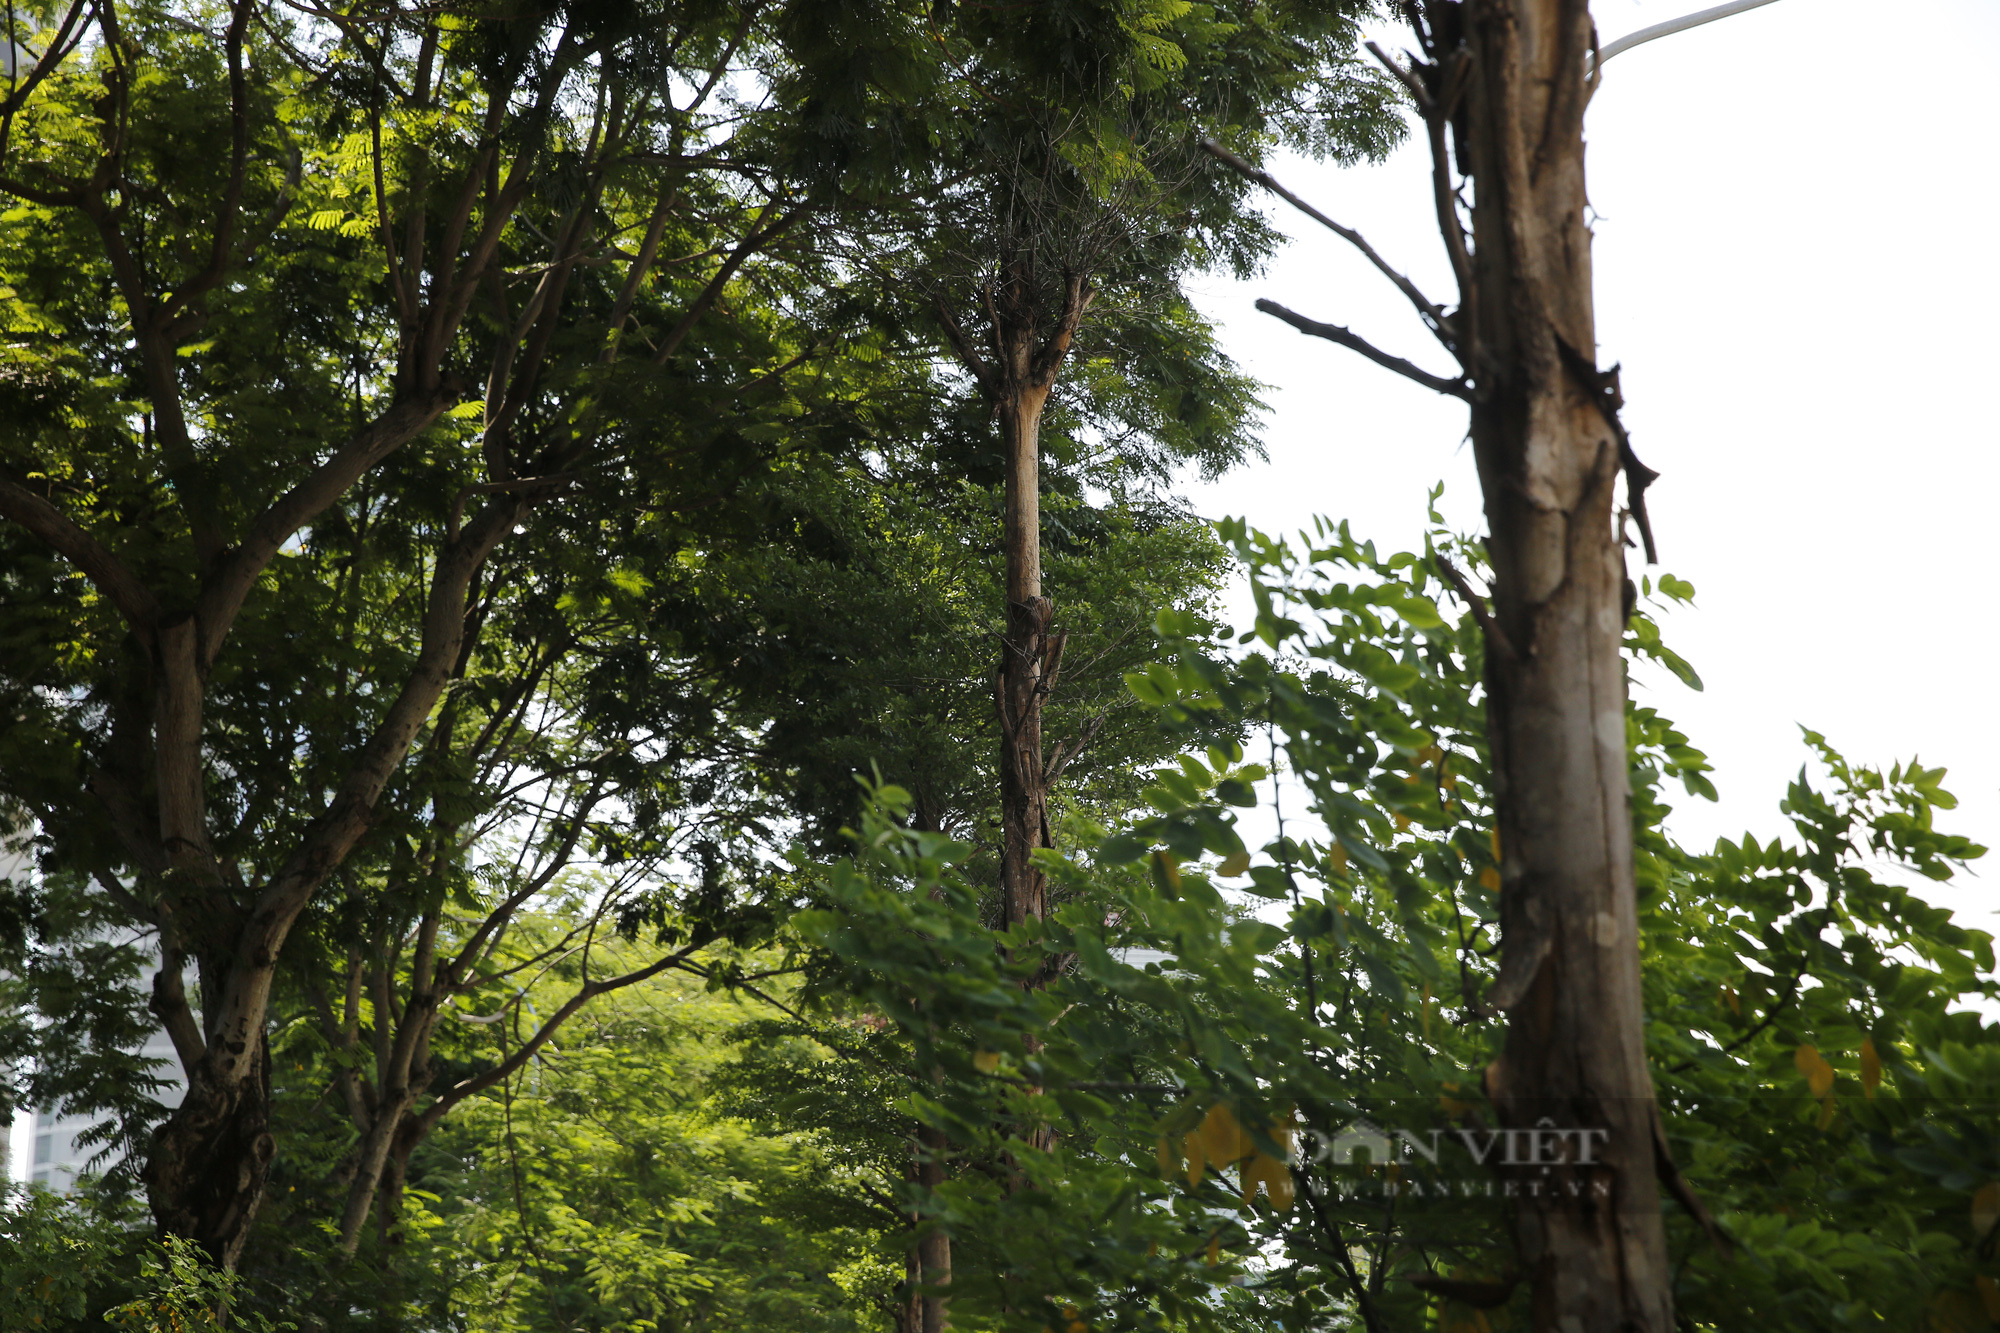 Đường đi bộ ngợp cây xanh giữa trung tâm Hà Nội bỗng trở nên nhếch nhác, trơ trọi - Ảnh 11.